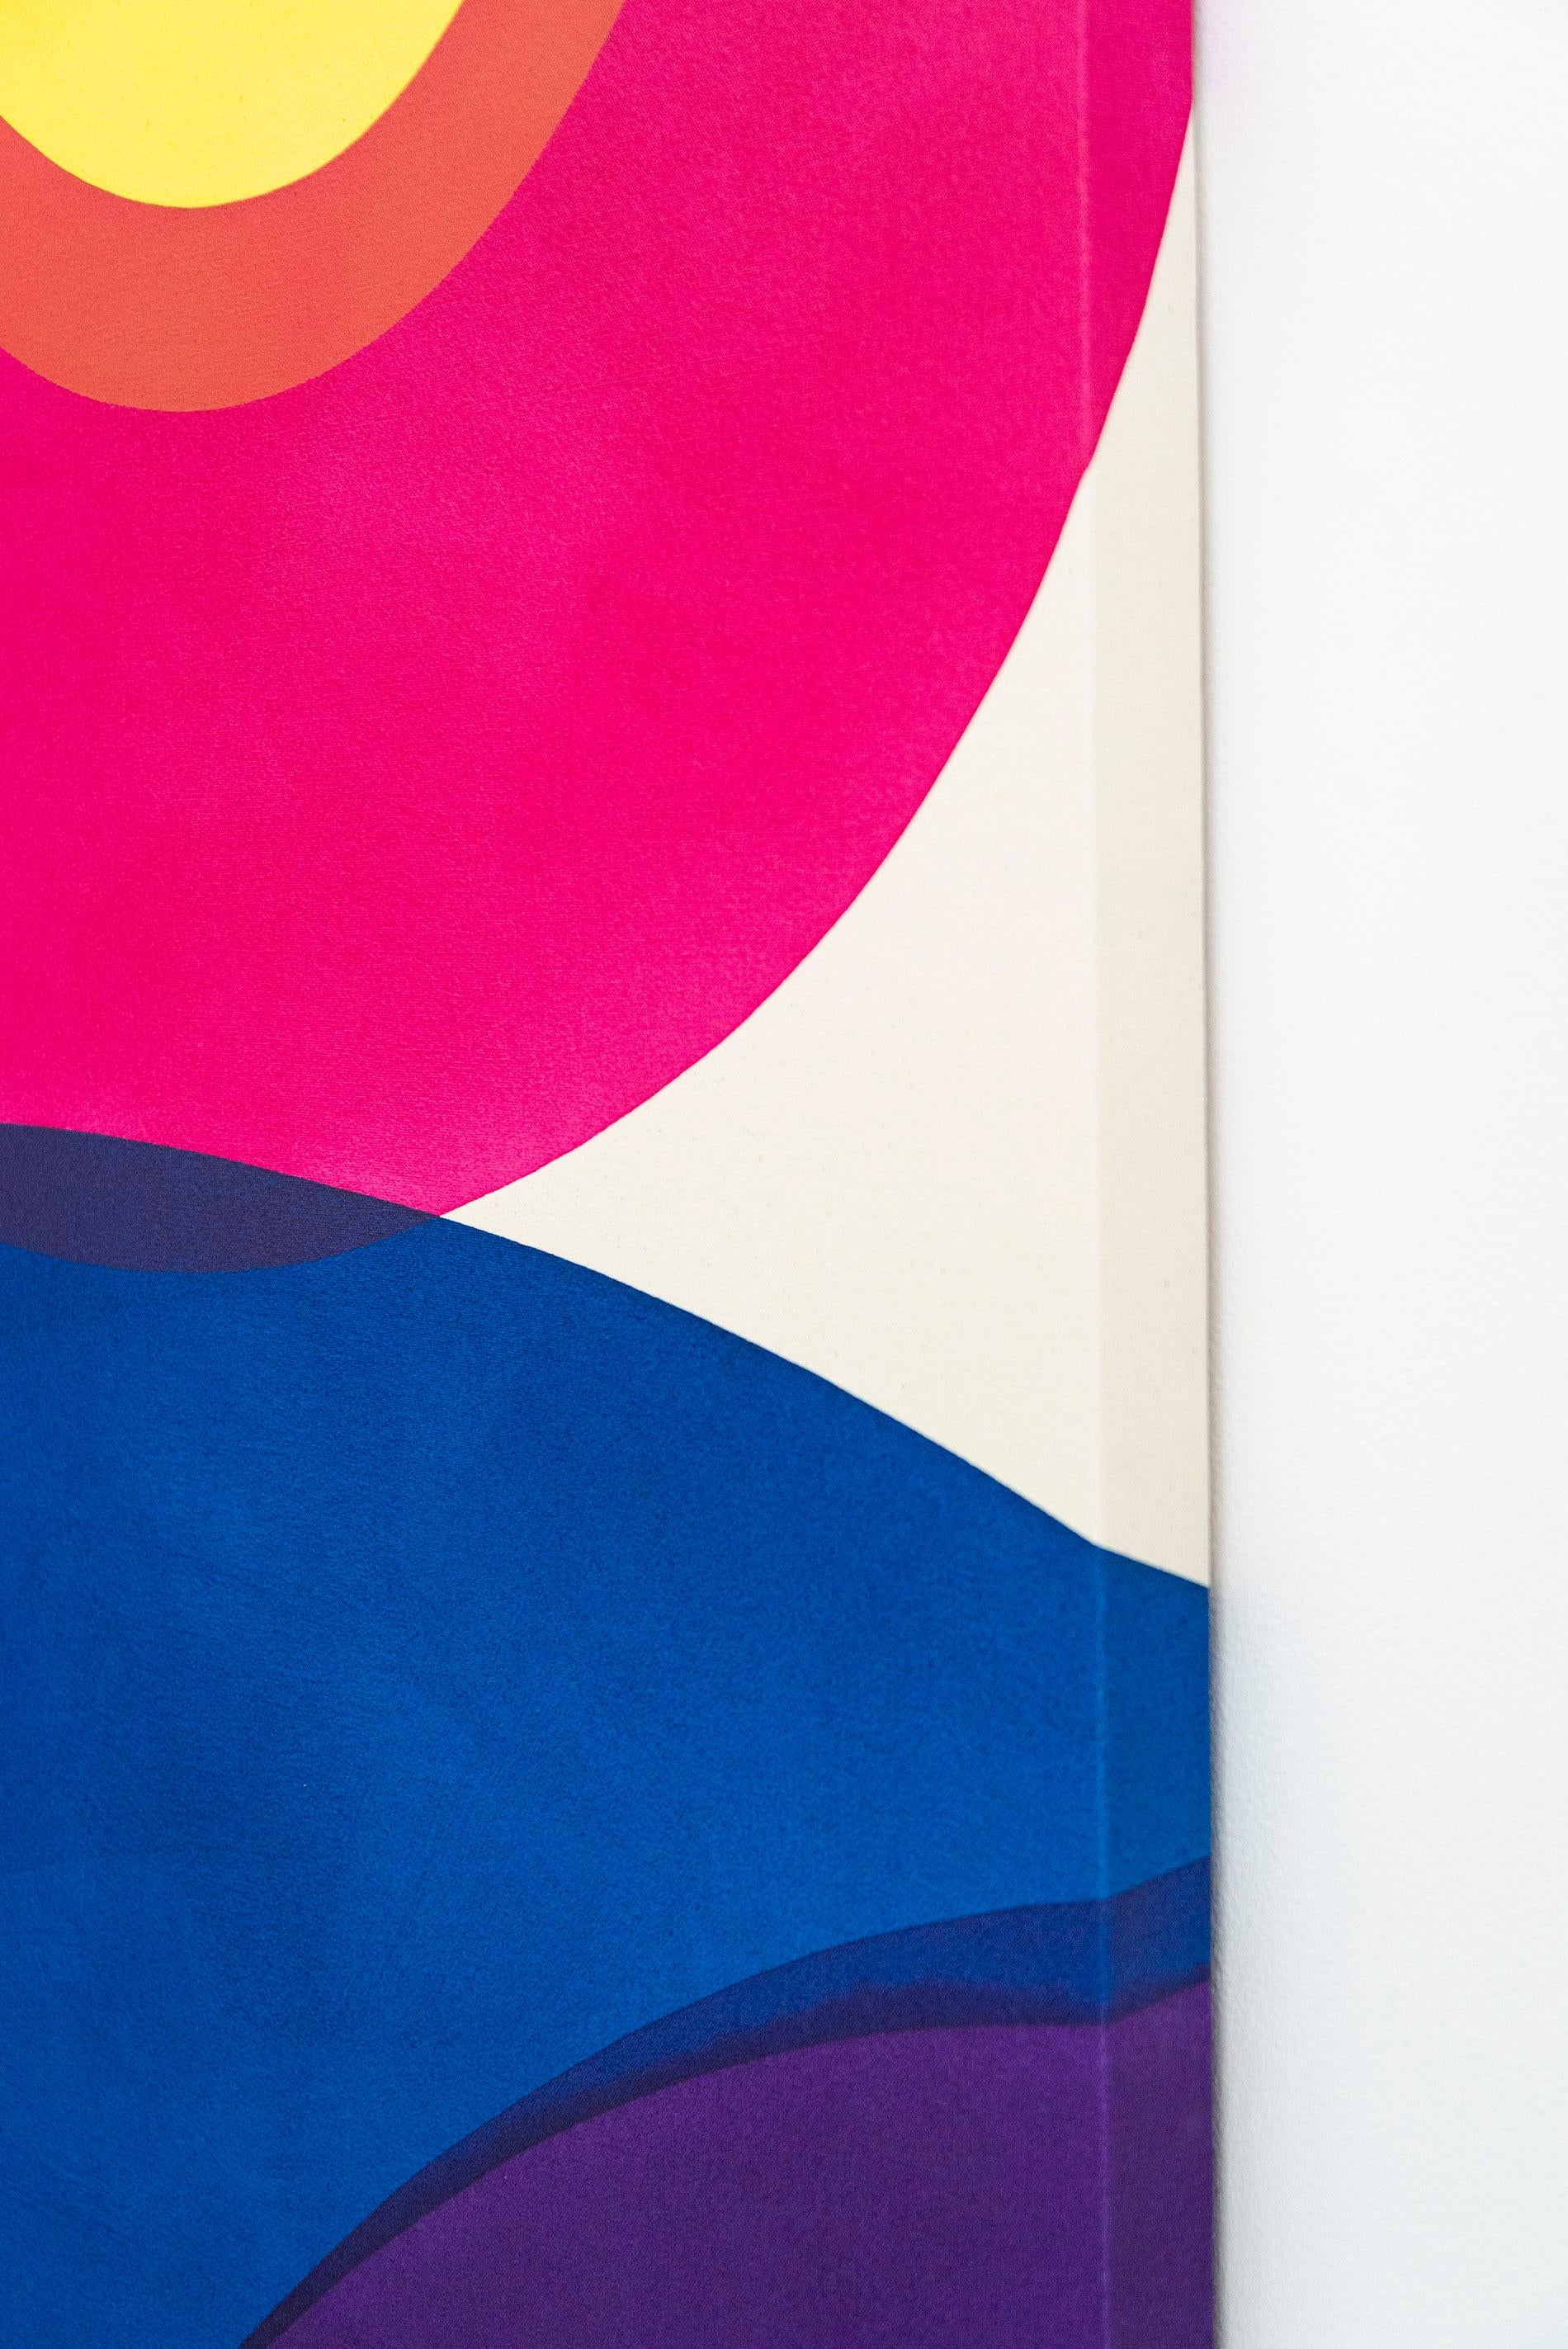 Ein kurzer Aufenthalt Nr. 4 – leuchtende Farben, abstrakt, minimalistisch, Acryl auf Leinwand 5